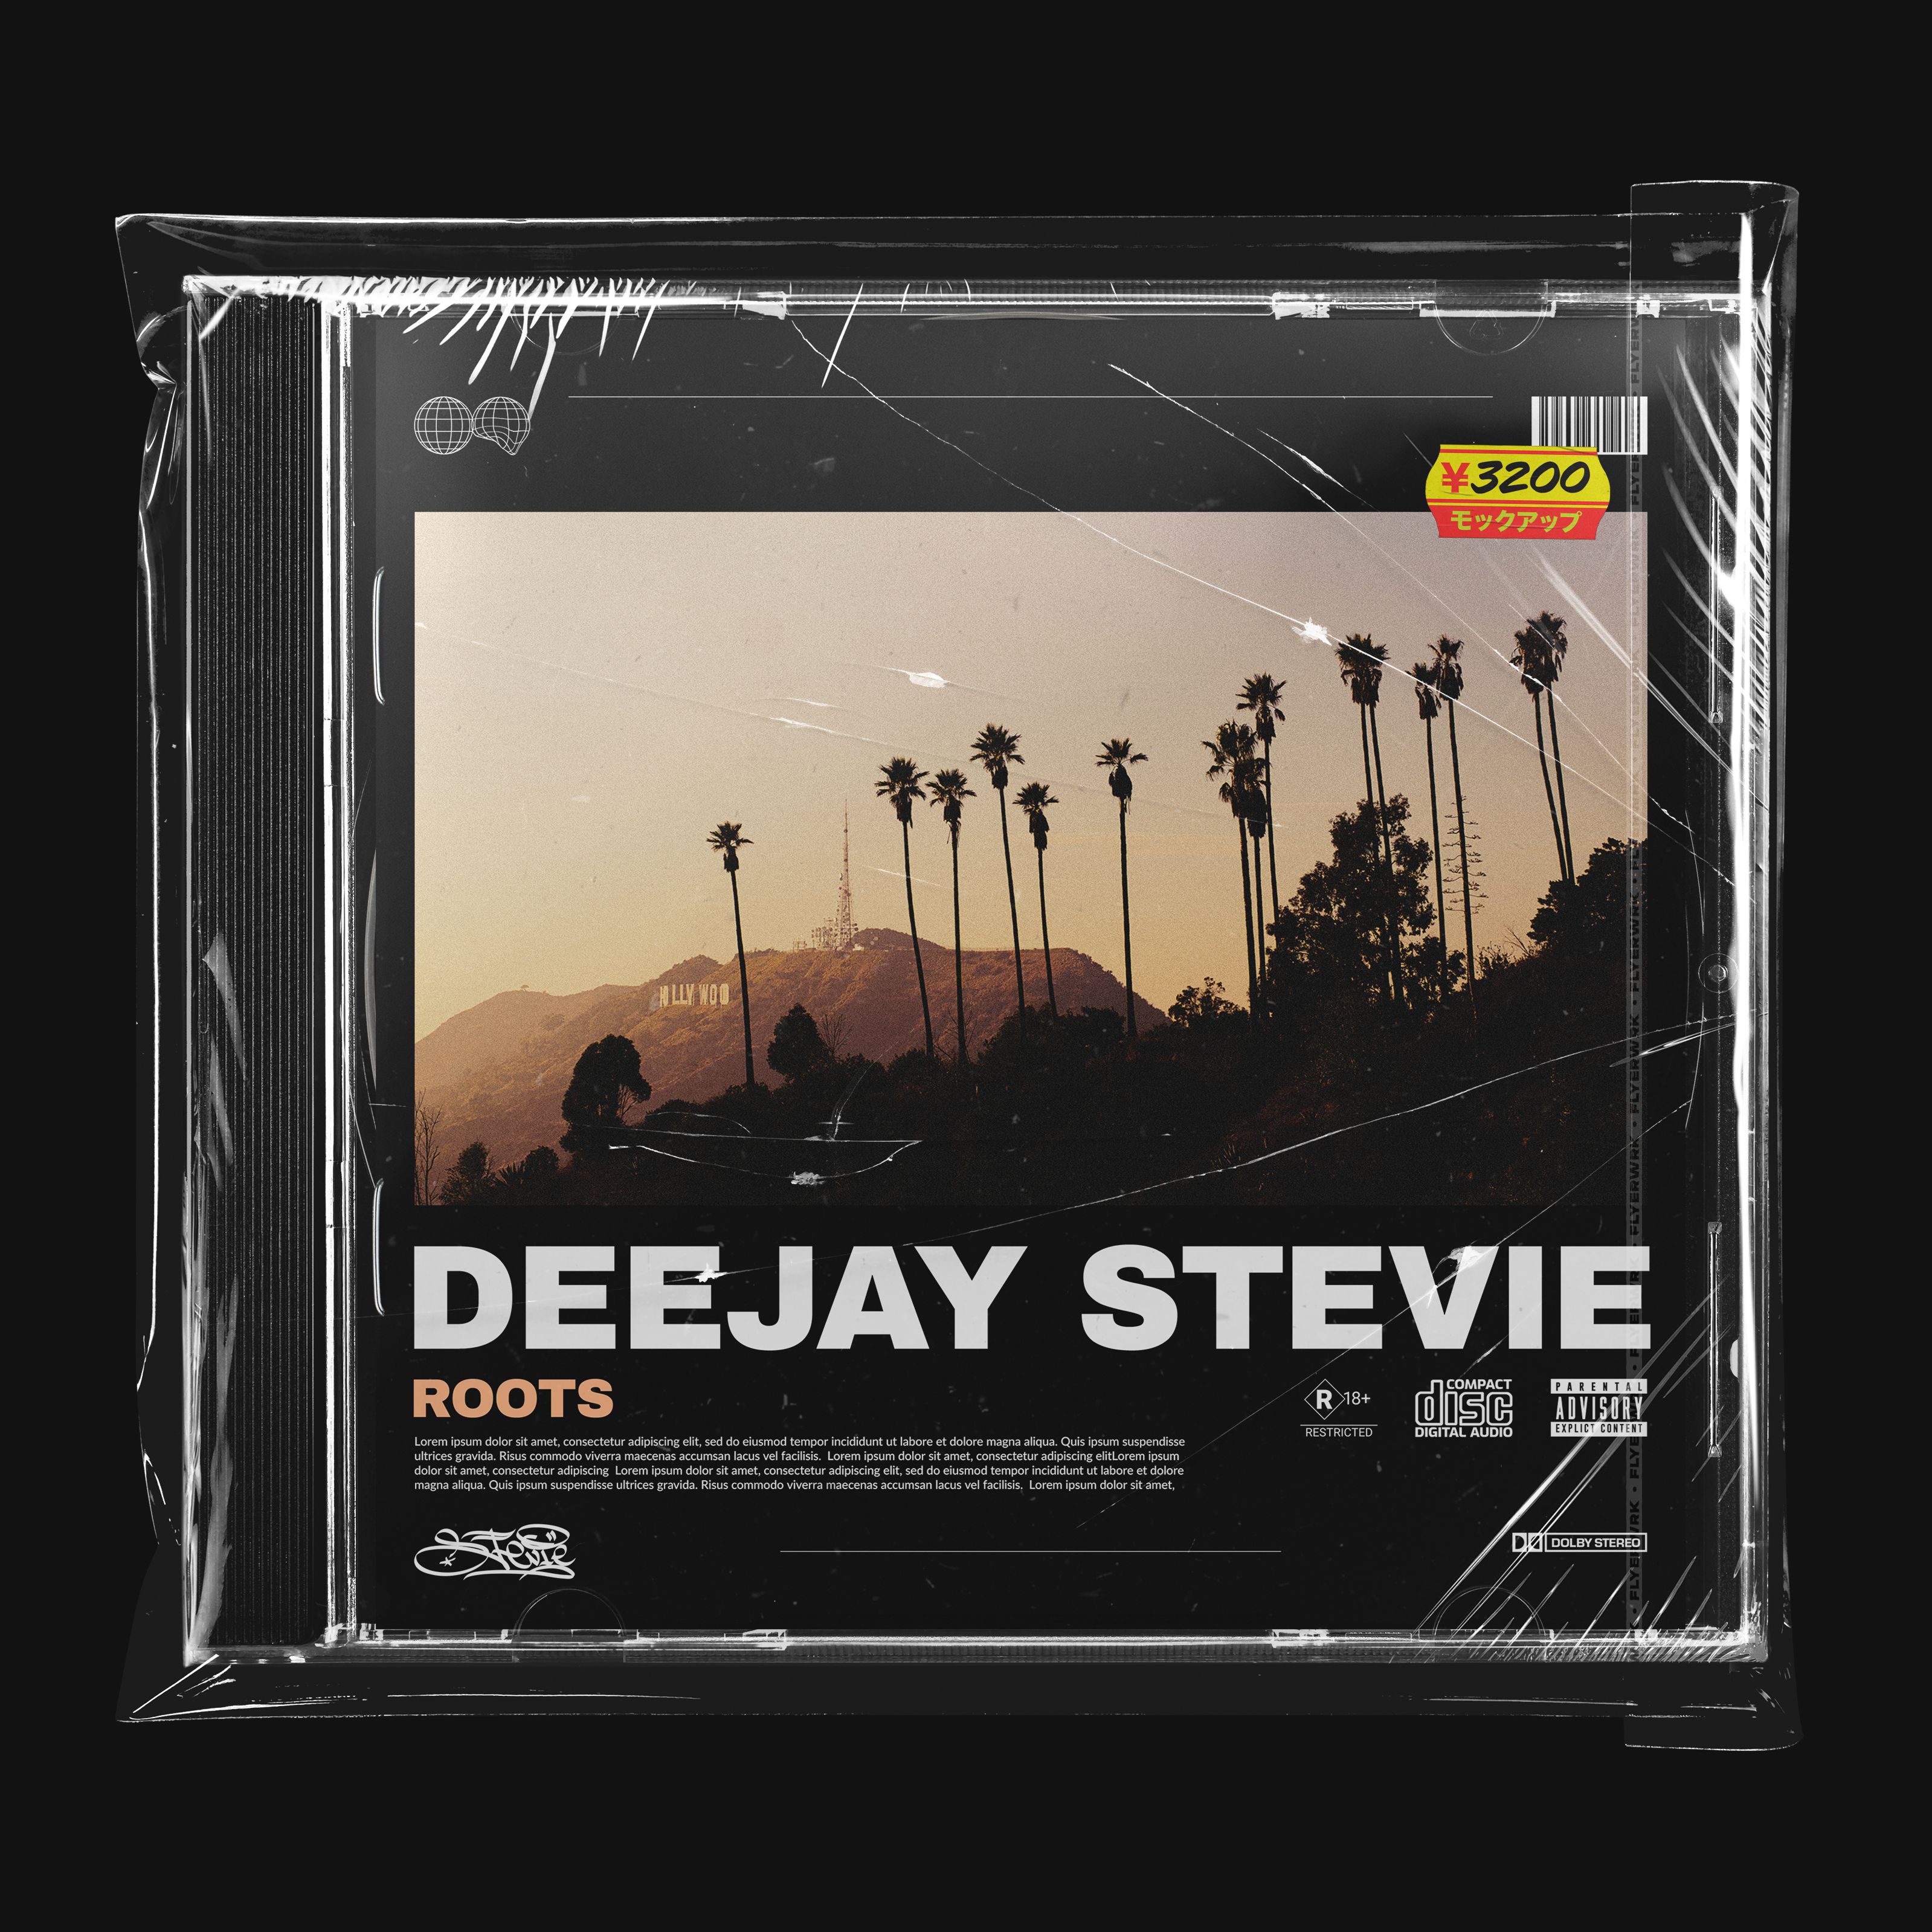 डाउनलोड करा Deejay Stevie - Roots"